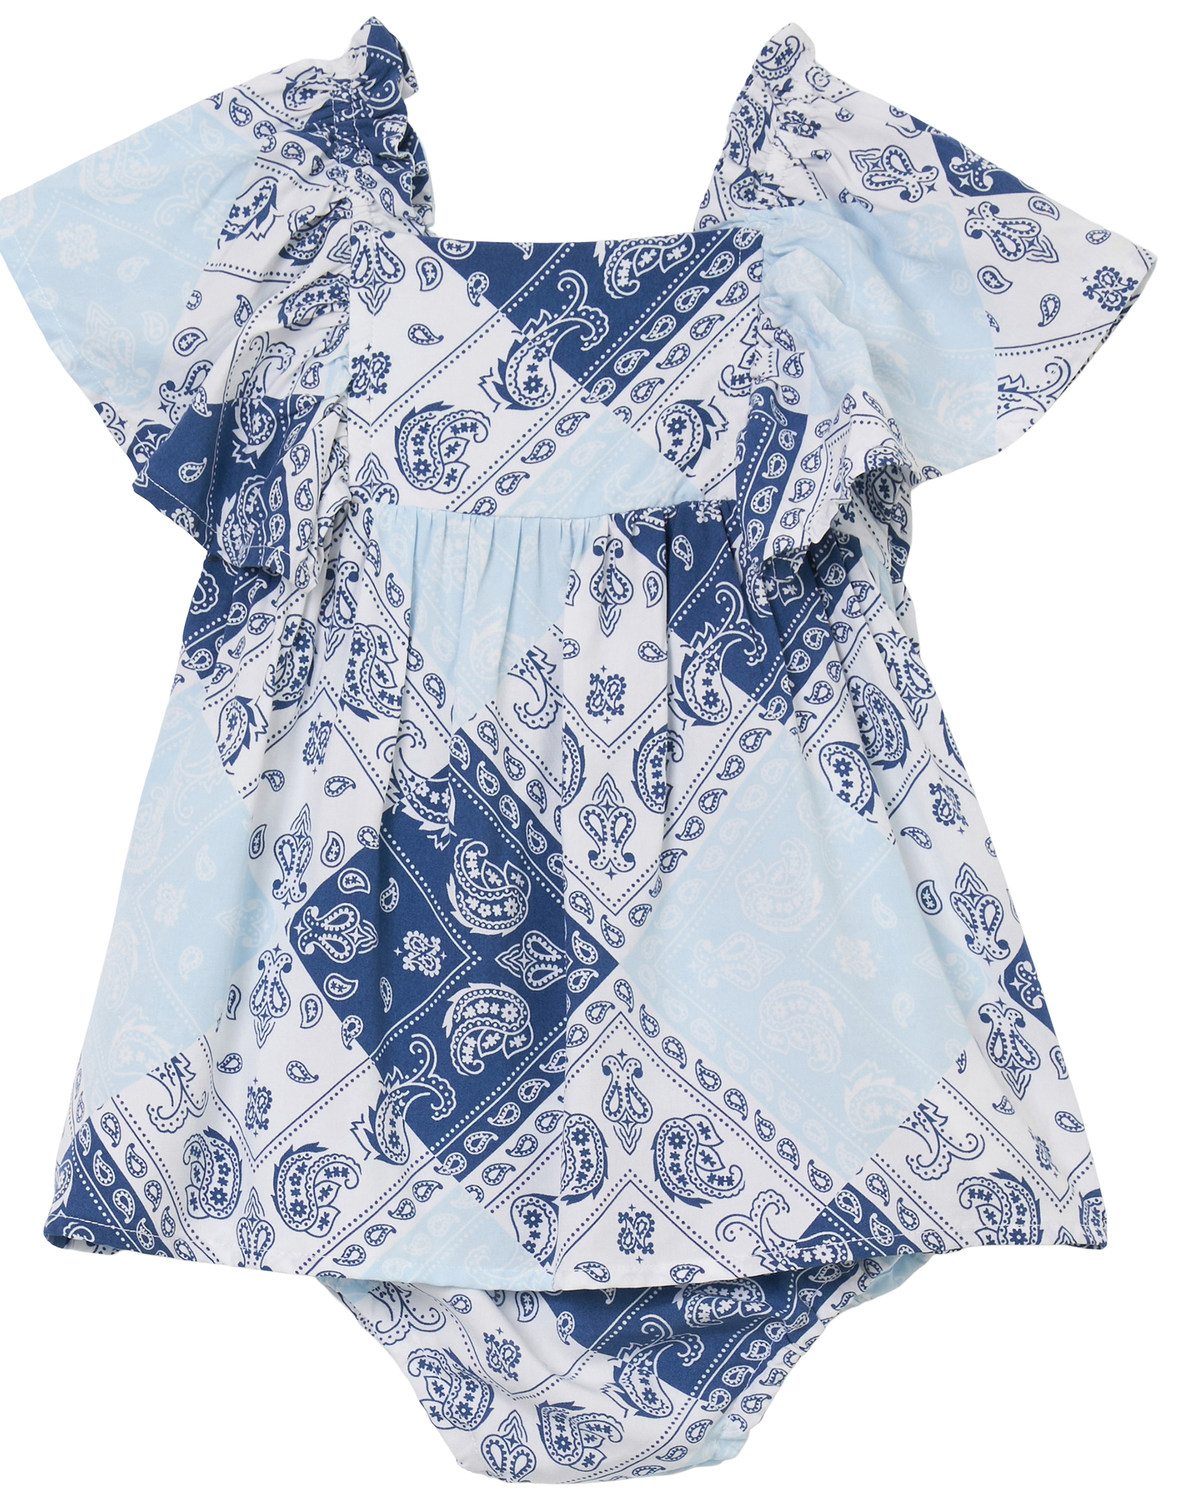 Wrangler Infant Girls' Bandana Print Short Sleeve Dress Onesie